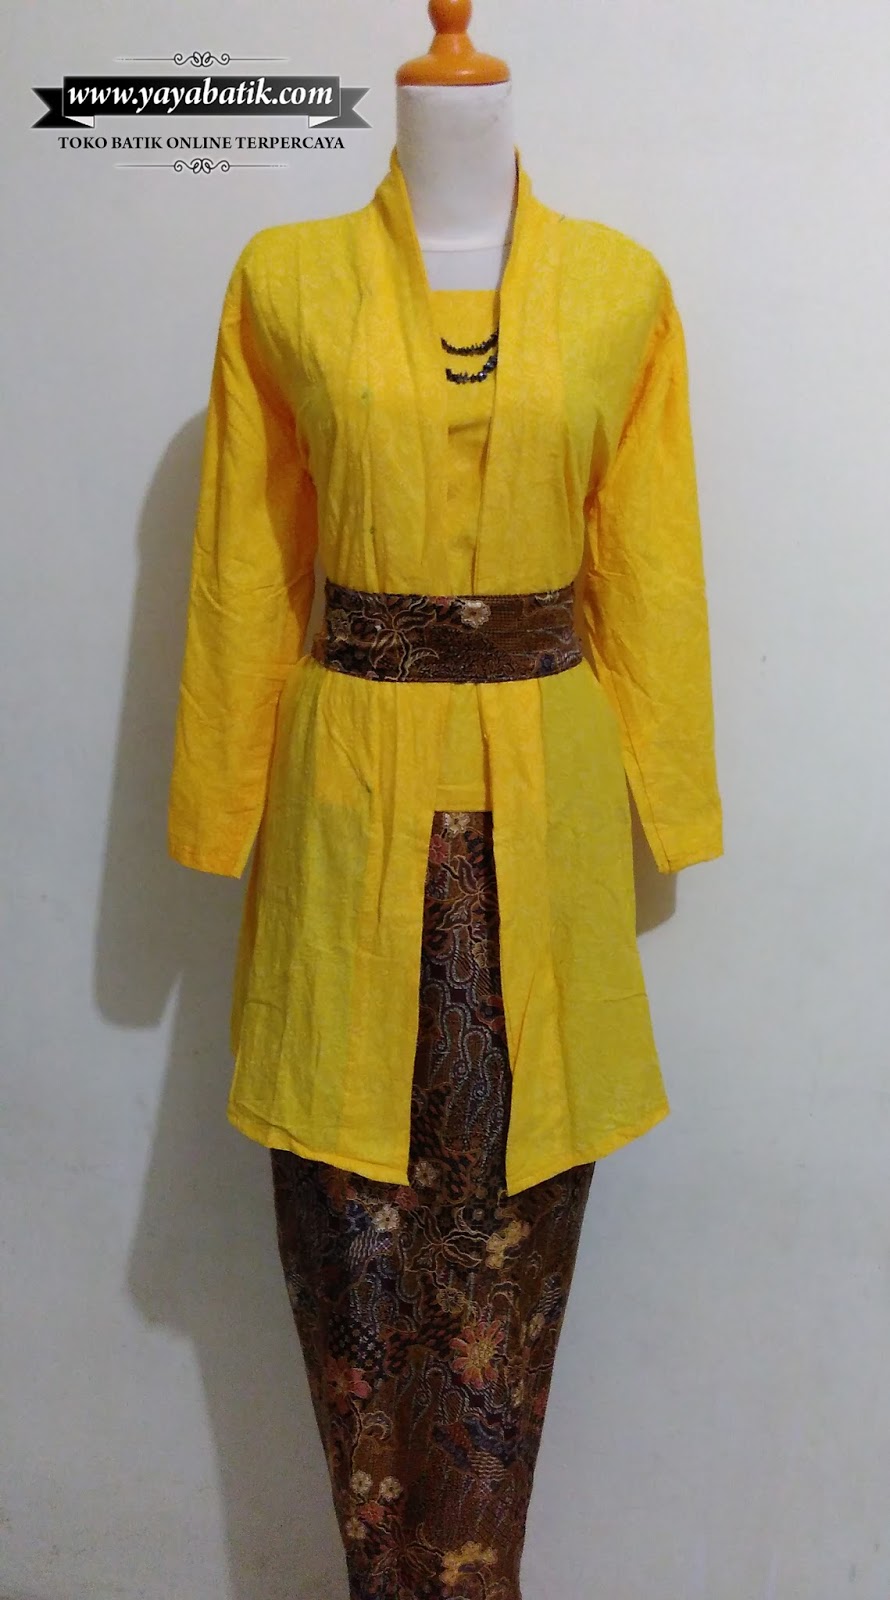  Kebaya  Batik Kutu Baru Kuning Toko Baju Batik Online  